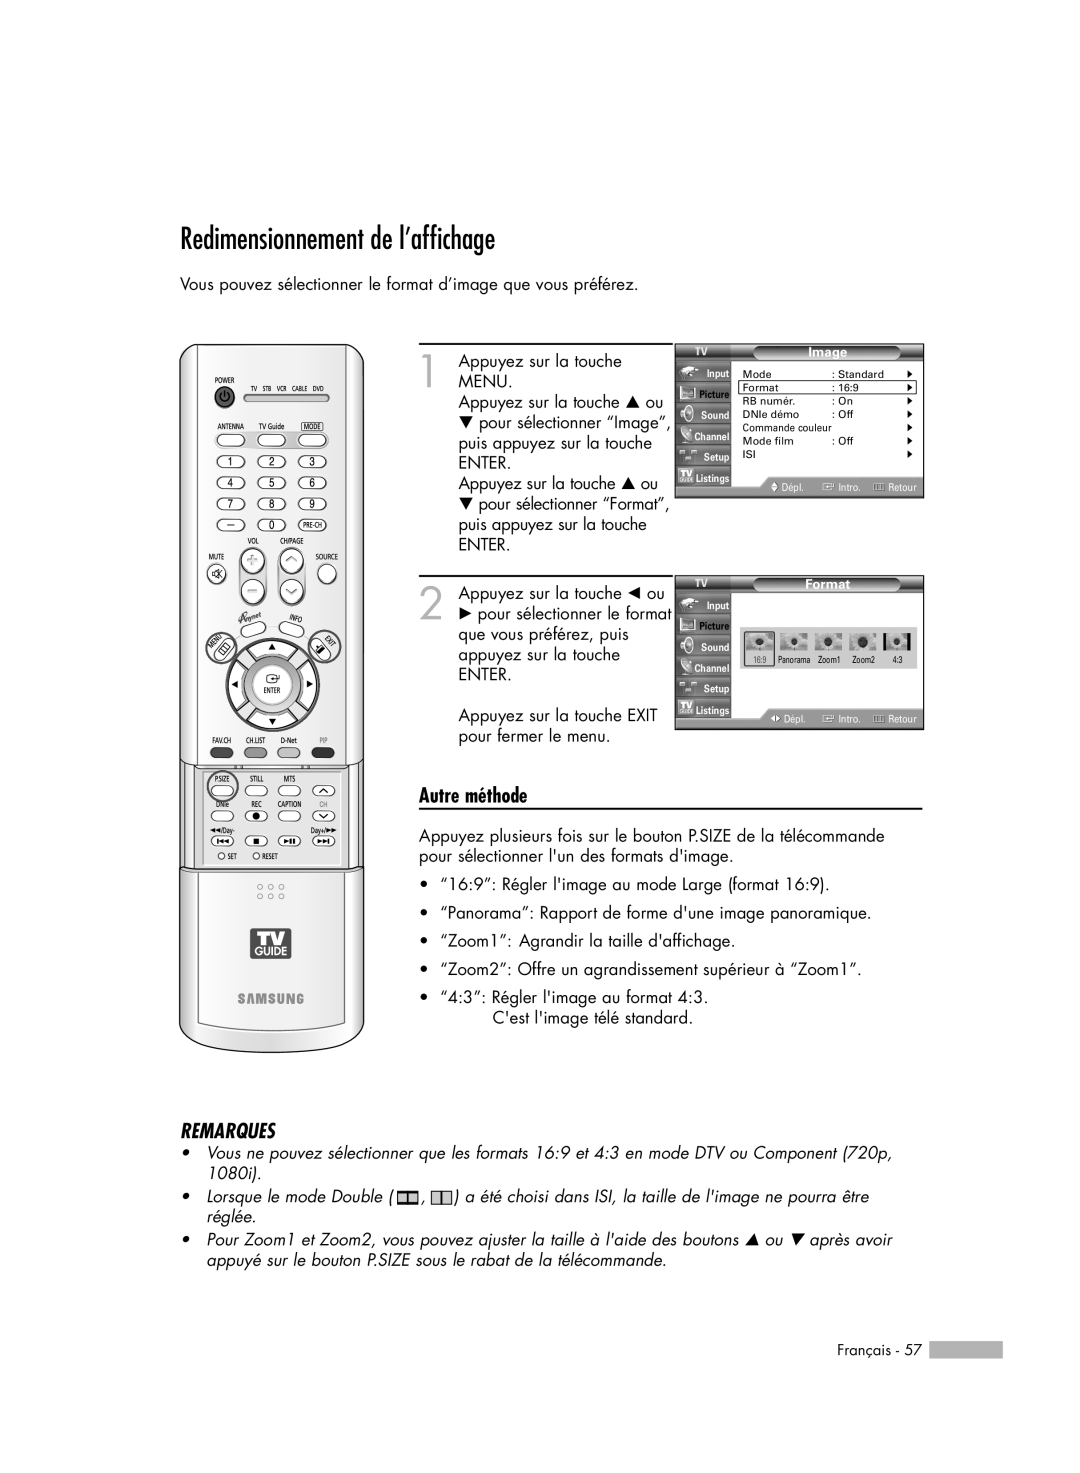 Samsung HL-R5078W, HL-R6178W, HL-R5678W Redimensionnement de l’affichage, Autre méthode, Remarques, Panorama, Zoom1 Zoom2 